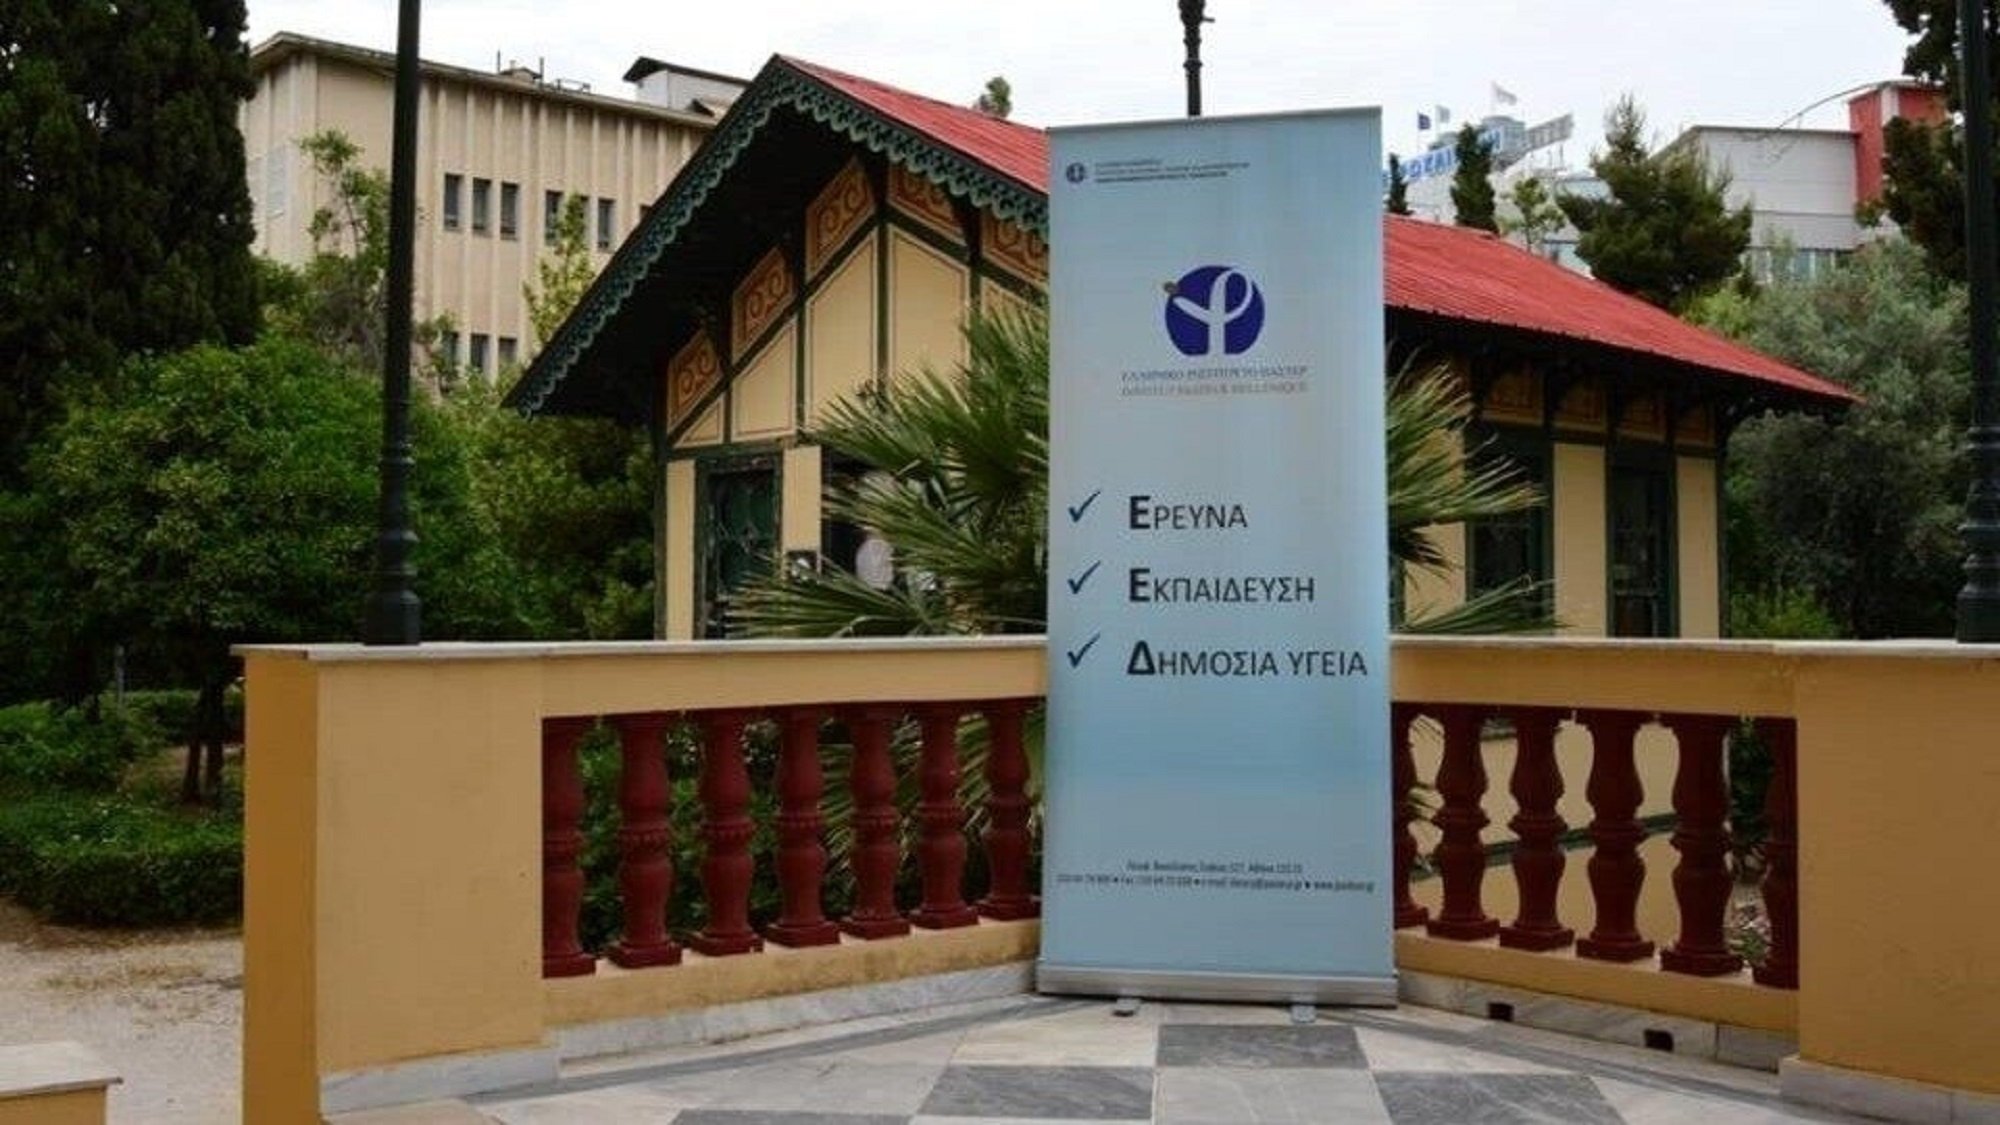 Το Ελληνικό Ινστιτούτο Παστέρ προσλαμβάνει προσωπικό - Οι θέσεις & τα προσόντα